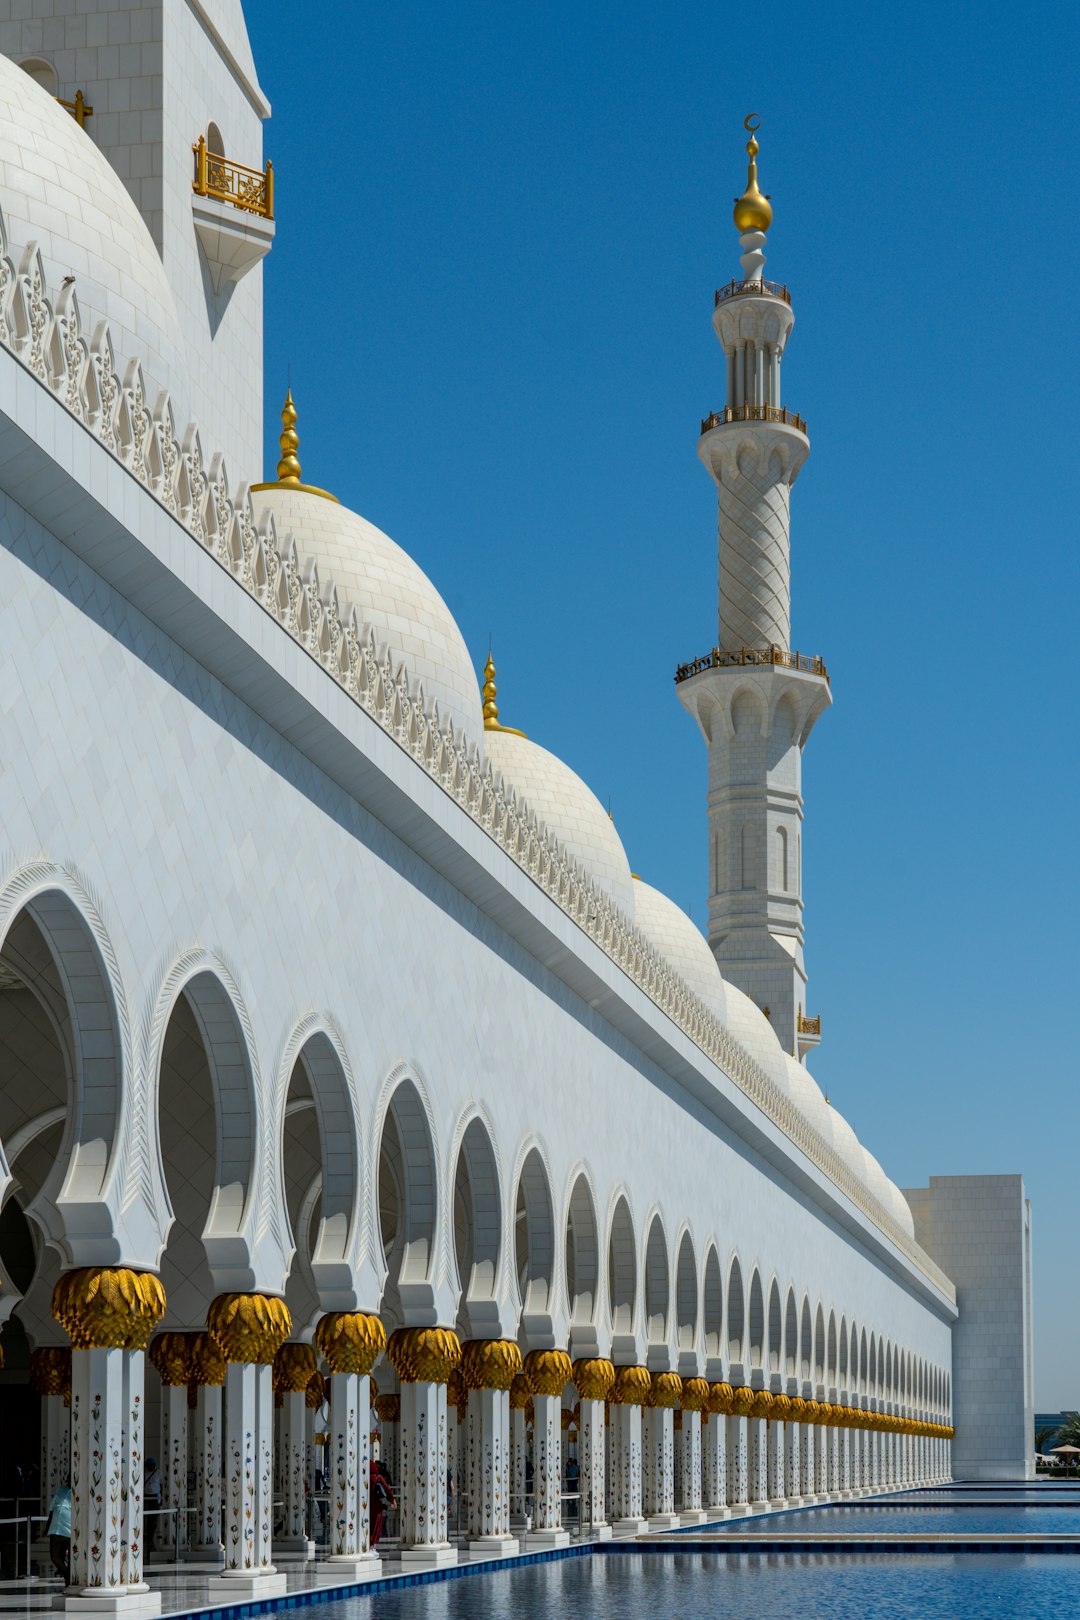 Mosque photo spot Sheikh Zayed Grand Mosque - Abu Dhabi - United Arab Emirates United Arab Emirates